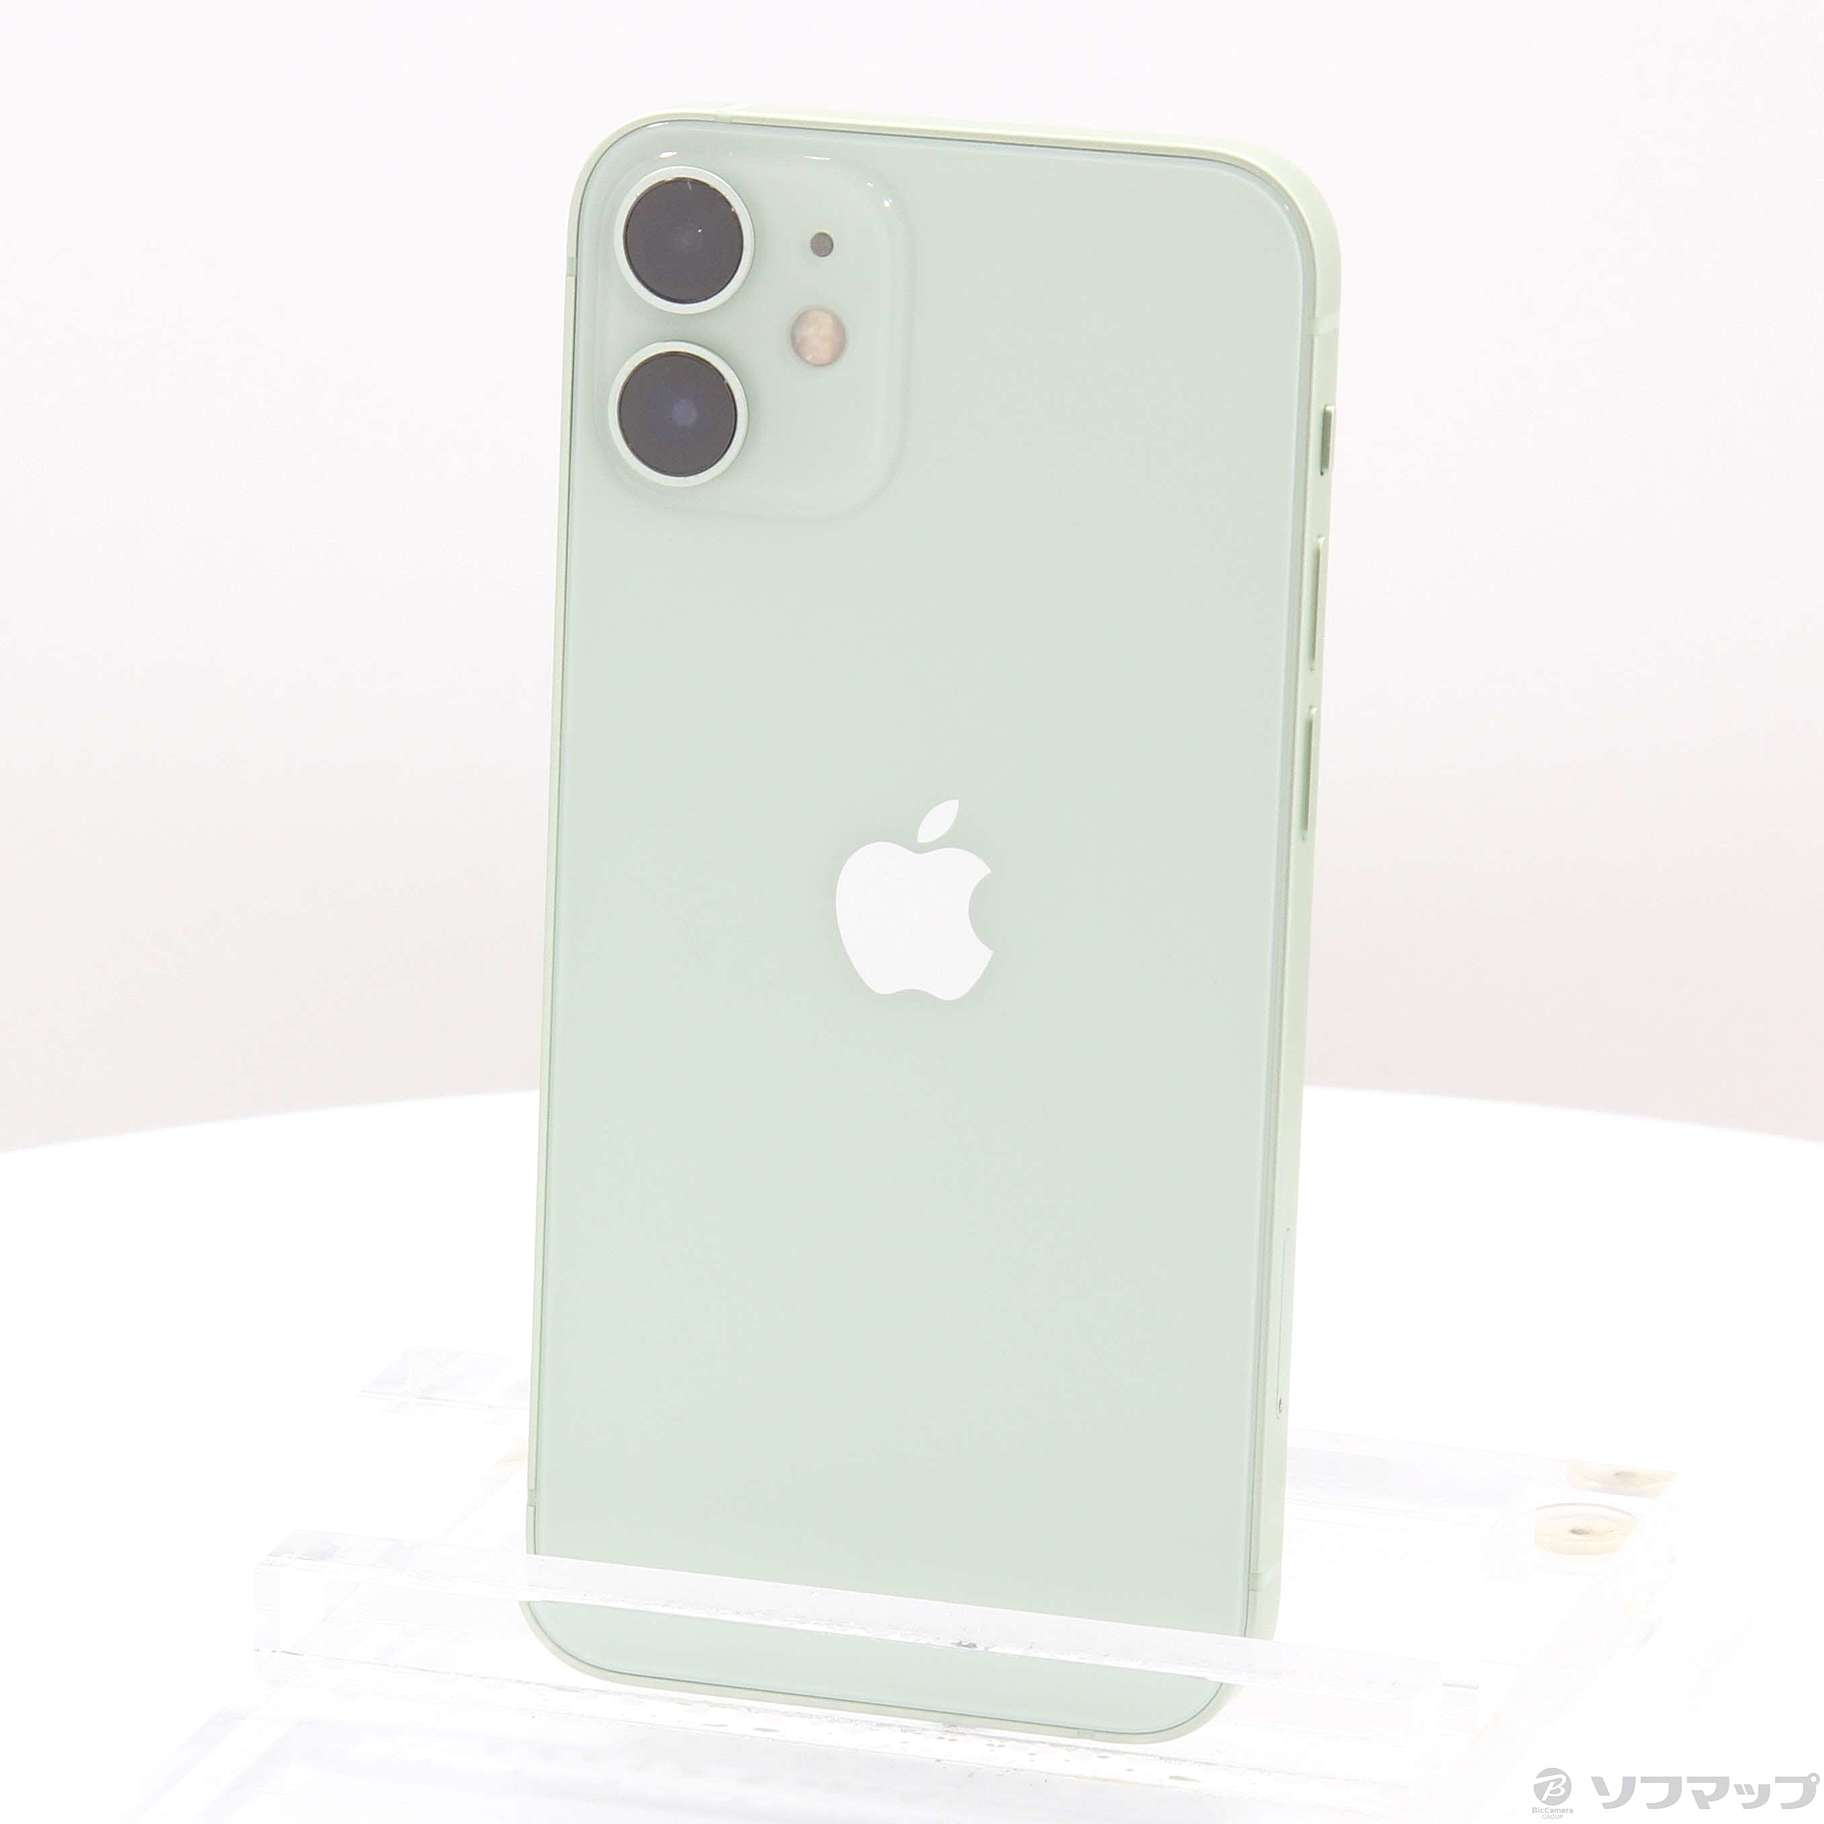 8,575円iPhone 12 mini ホワイト 64GB美品ジャンク